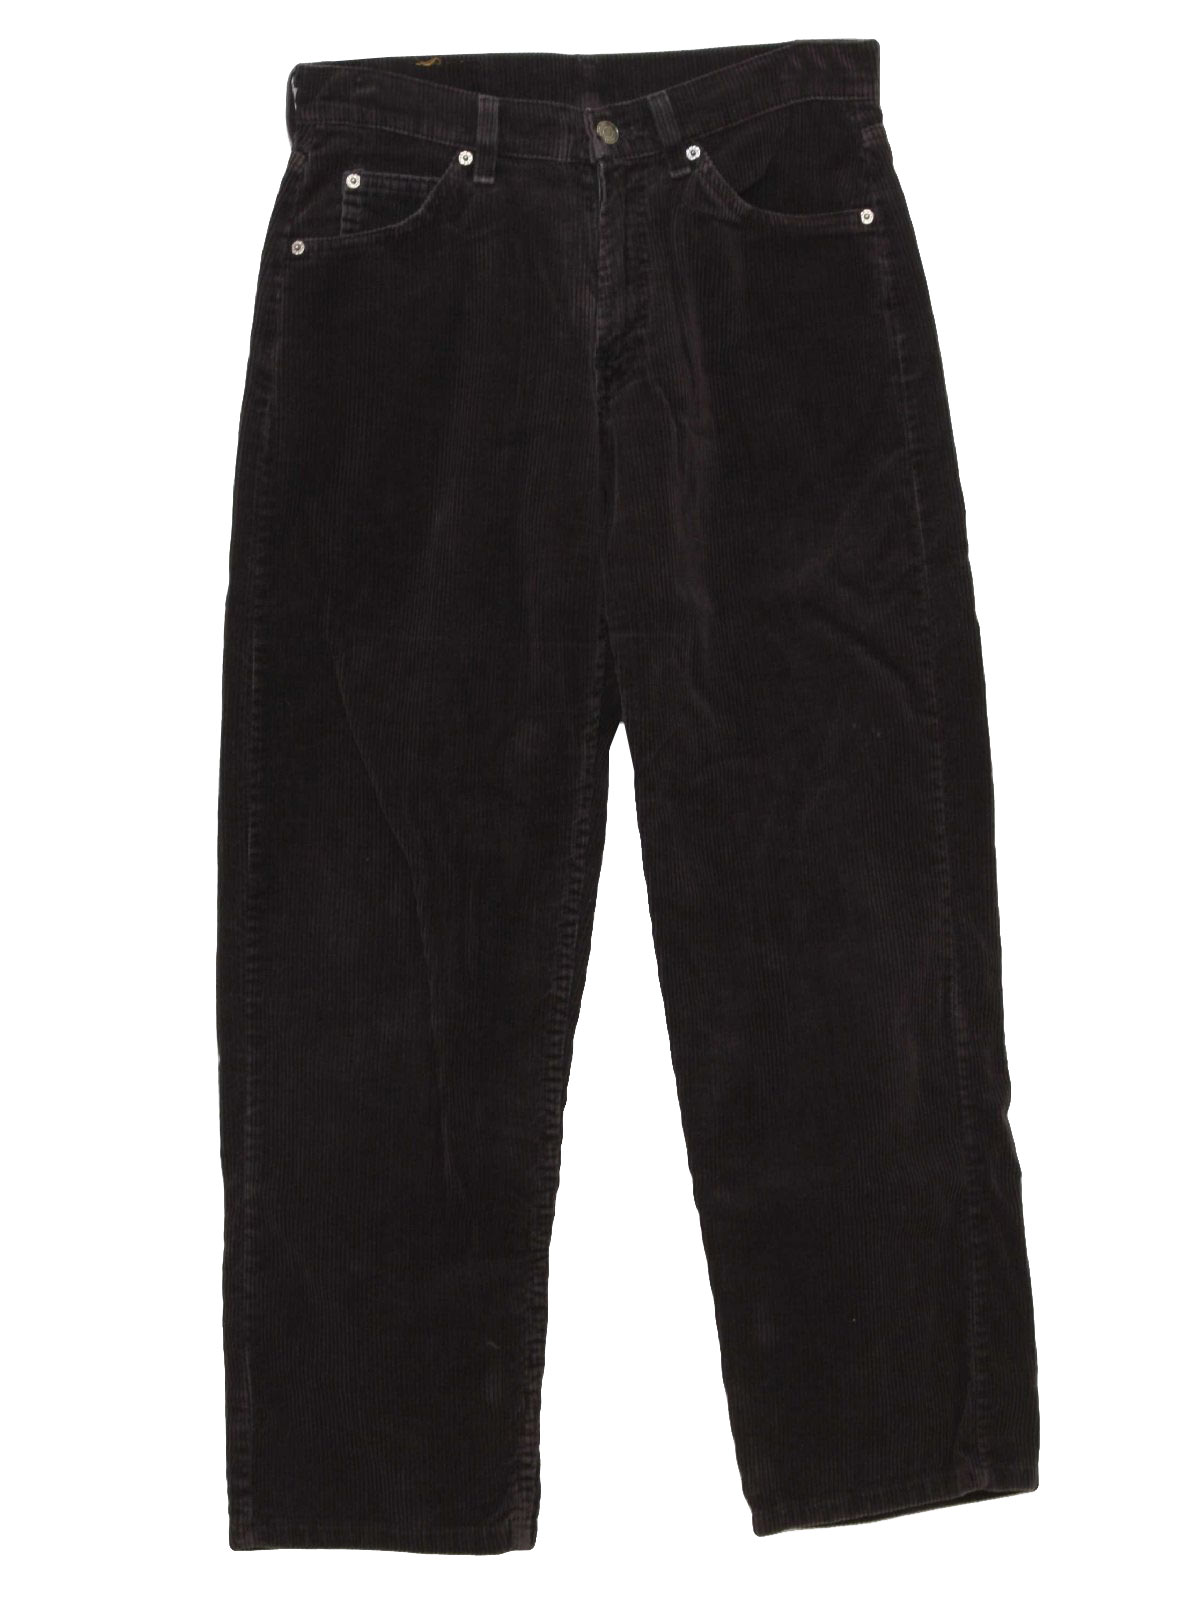 Retro 1990's Pants (Levis) : 90s -Levis- Mens black cotton ...